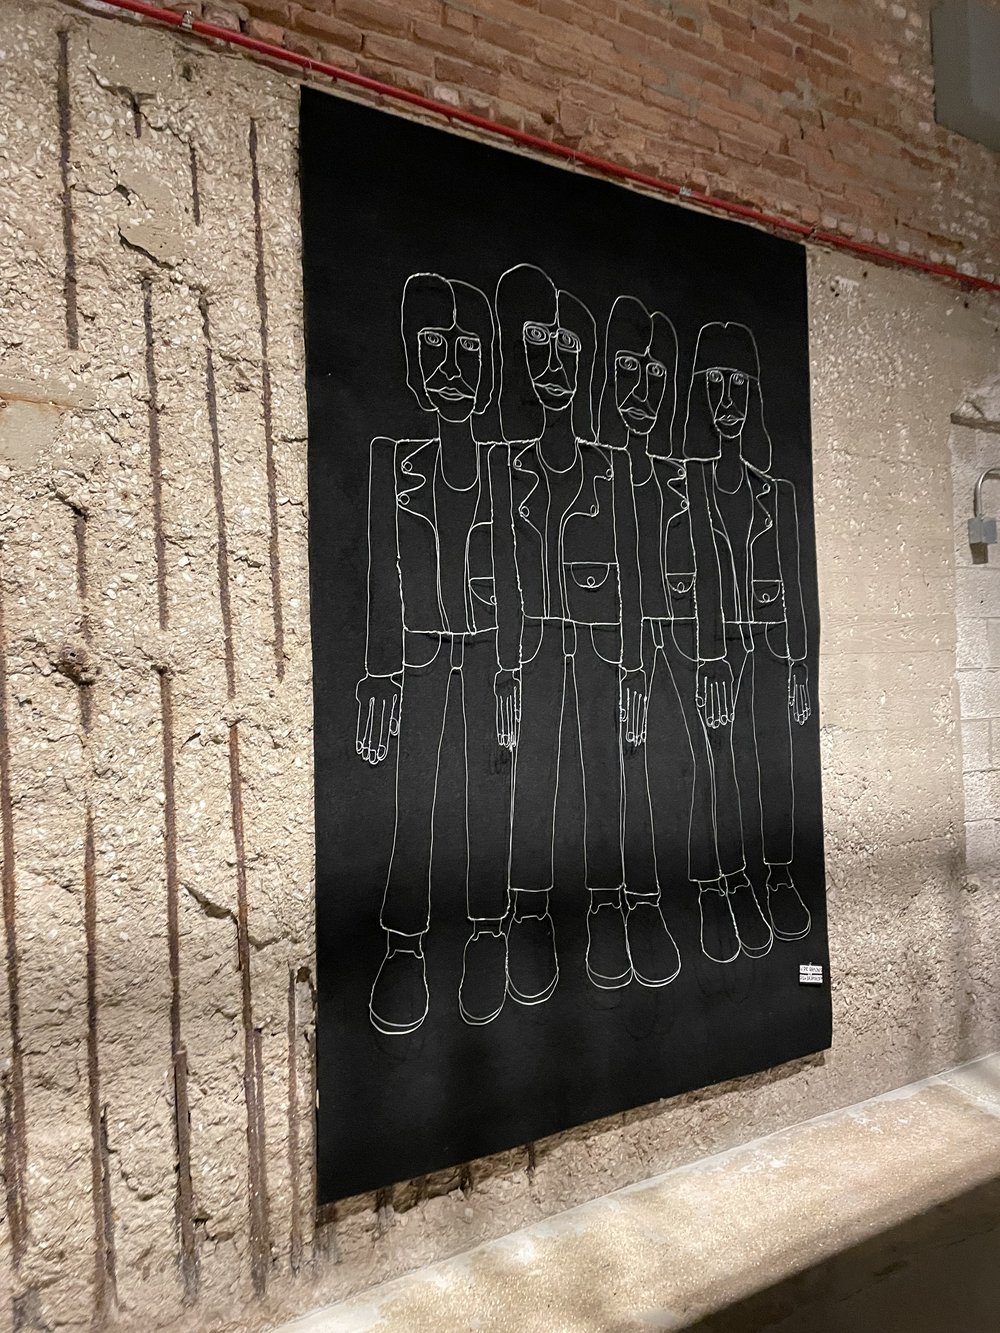 &lt;em&gt;Artwork of the Ramones on display at the Shed&lt;/em&gt;